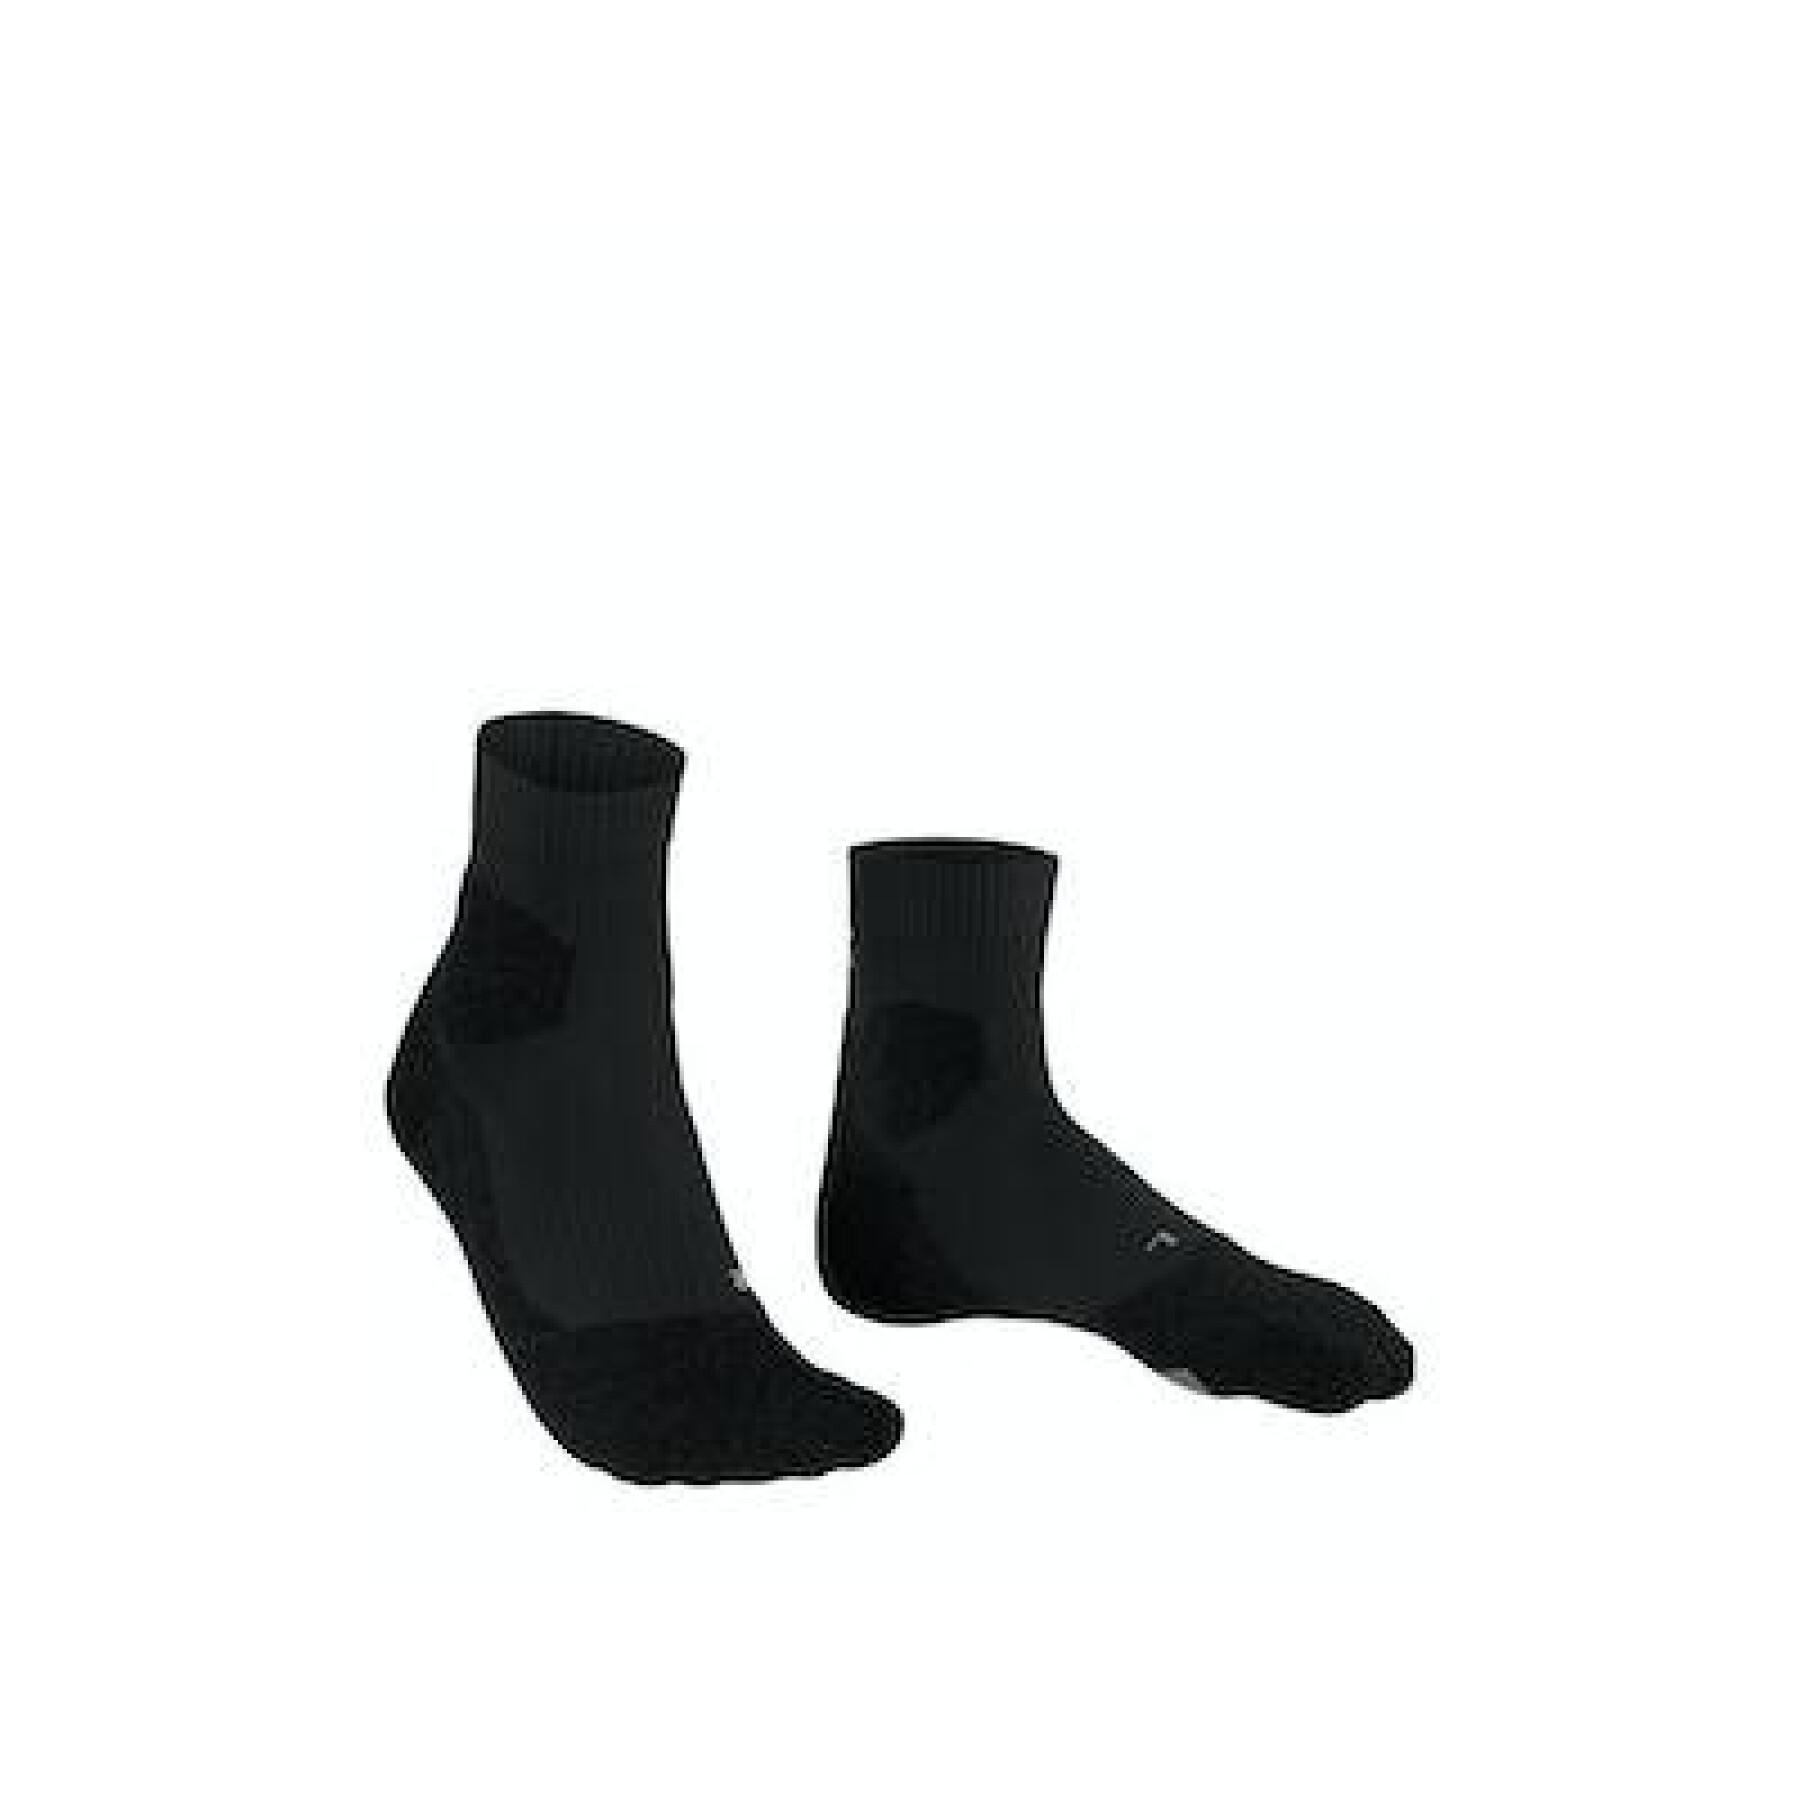 Women's socks Falke RU Trail Grip - Socks - Textile - Rallystory wear